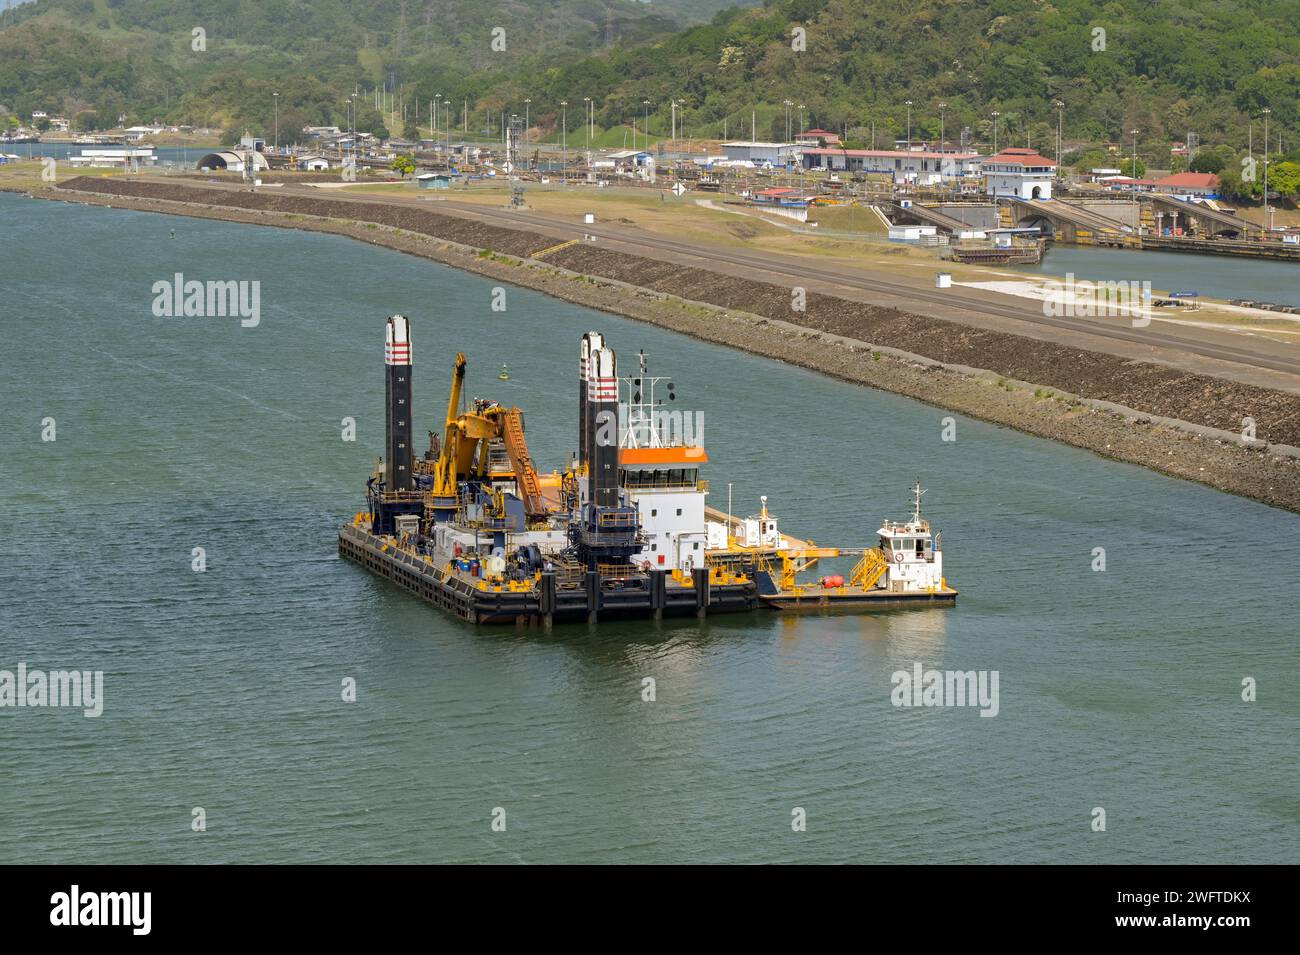 Canale di Panama, Panama - 23 gennaio 2024: Grande chiatta industriale utilizzata per dragare il canale per rimuovere limo e sporco. Foto Stock